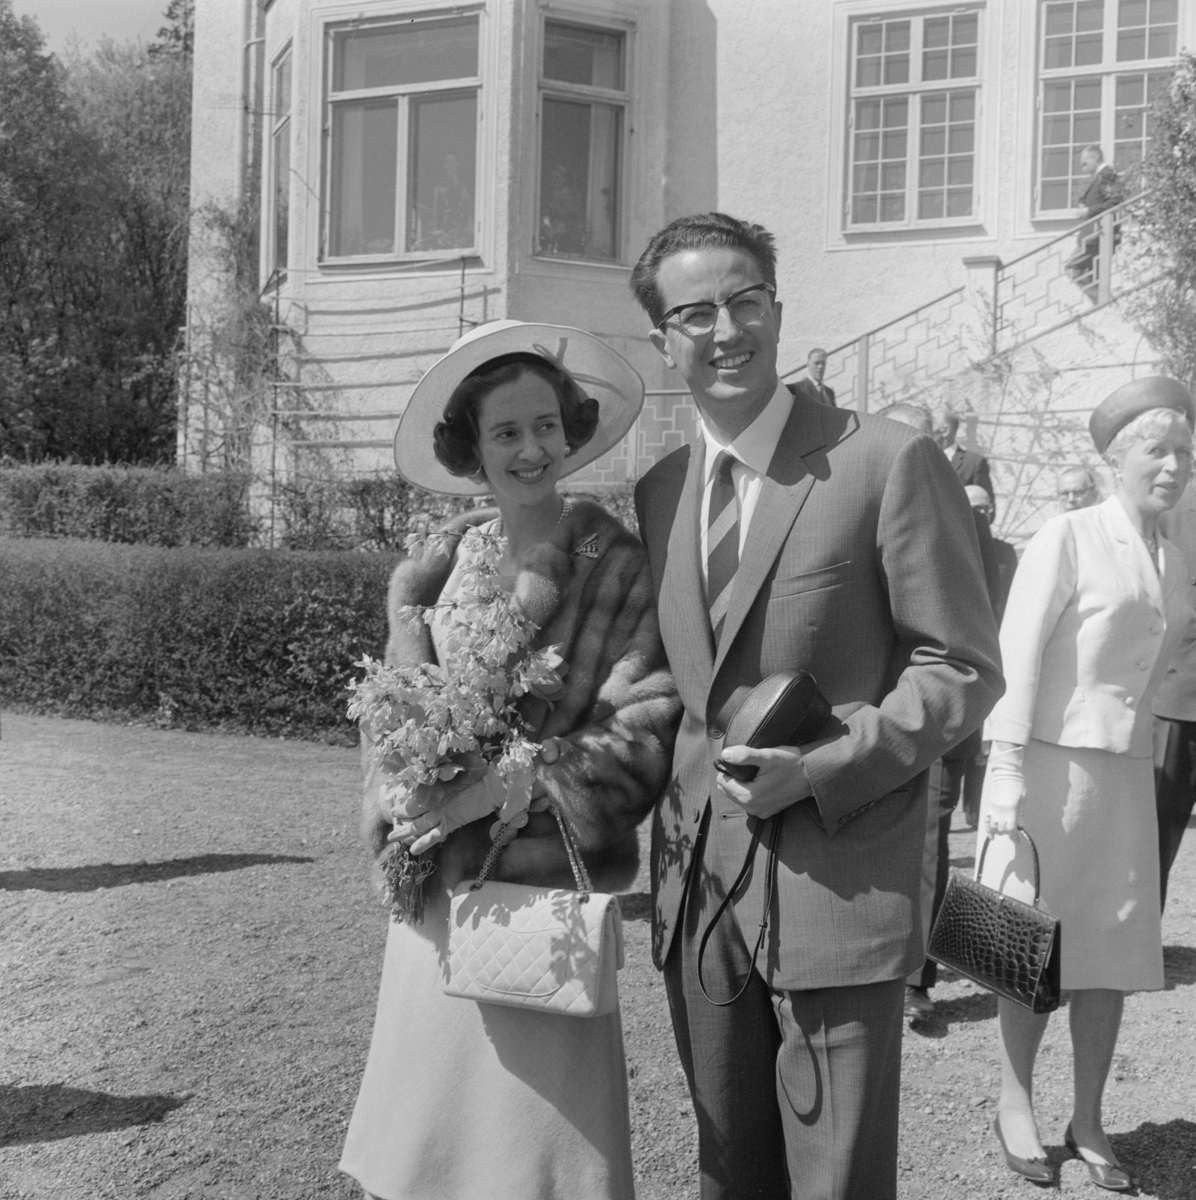 Våren 1964 besökte det belgiska kungaparet Baudouin och Fabiola Sverige. Ett särskilt populärt besöksmål torde Villa Fridhem varit, som Baudouins morfar prins Carl låtit uppföras som sommarresidens i början av förra seklet. På Villa Fridhem hade  Baudouins mor, kronprinsessan Astrid, upplevt många barn- och ungdomsår och en gång sagt att ”en sommar utan Villa Fridhem är ingen sommar”.